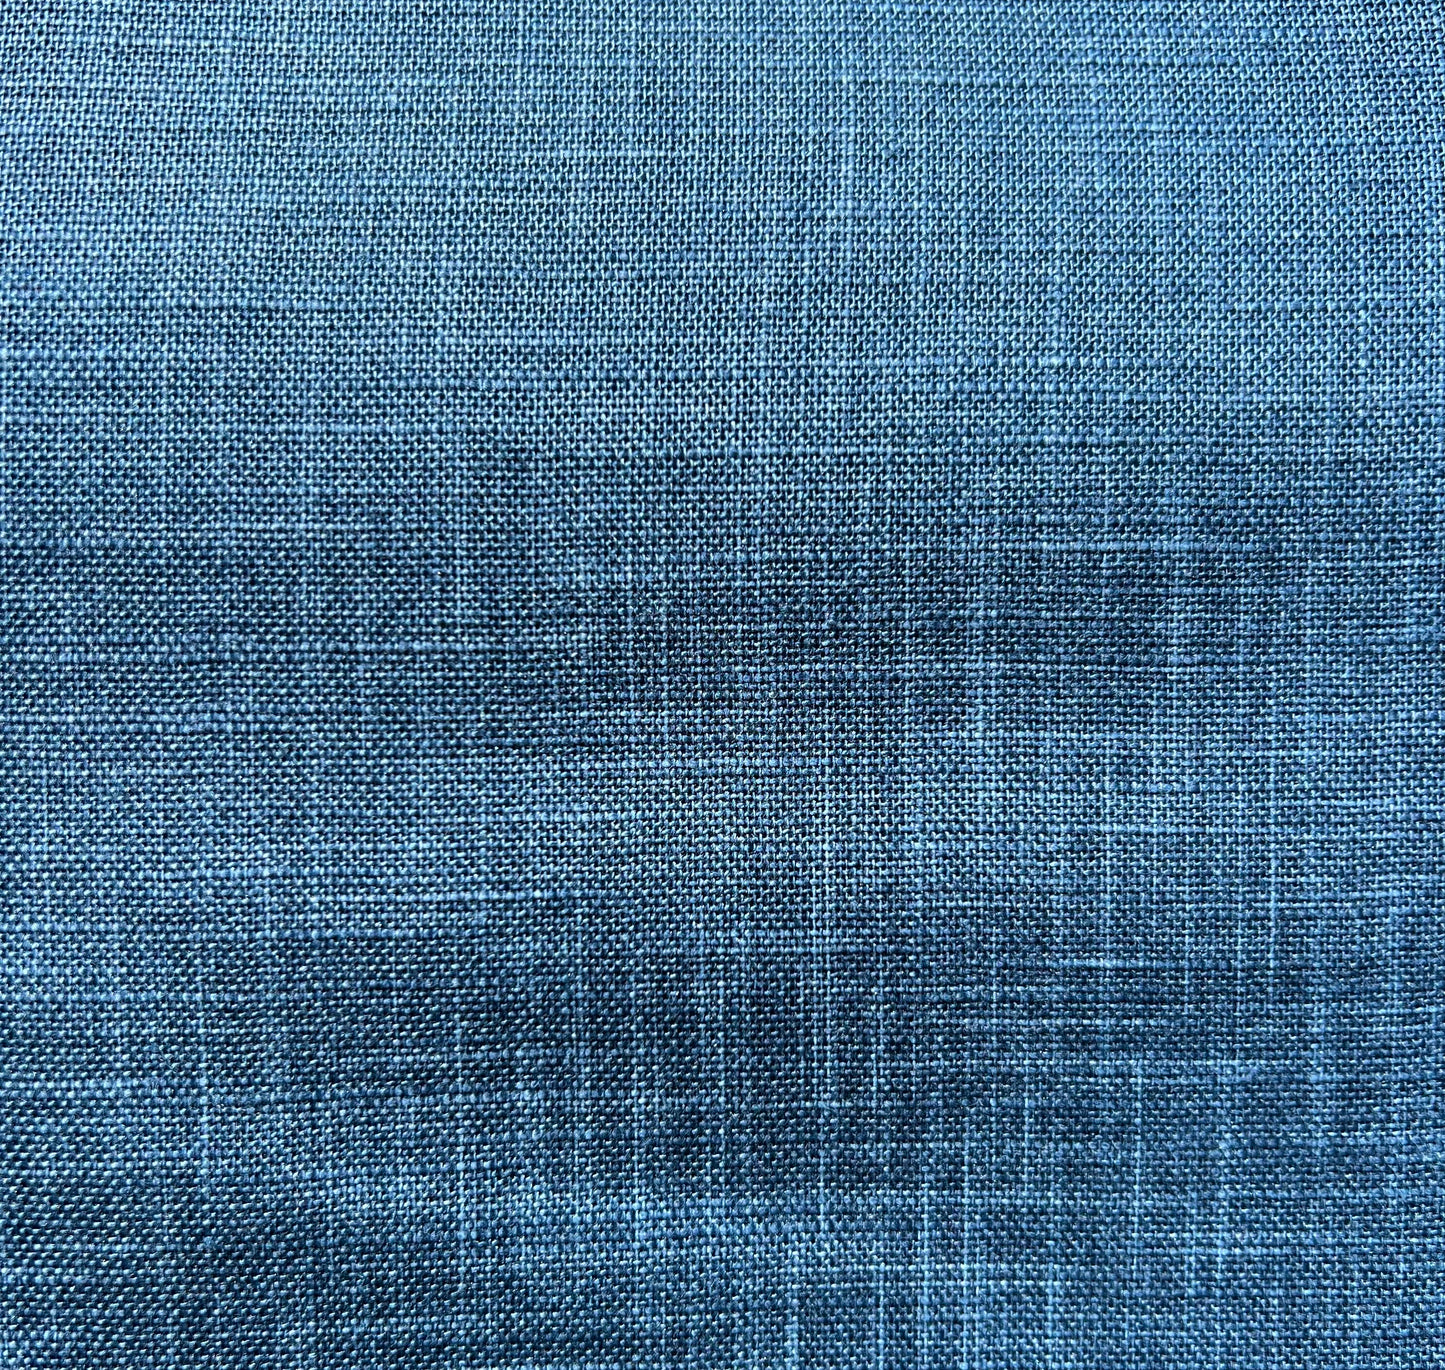 Japanese Zabuton Floor Pillow Mura Blue